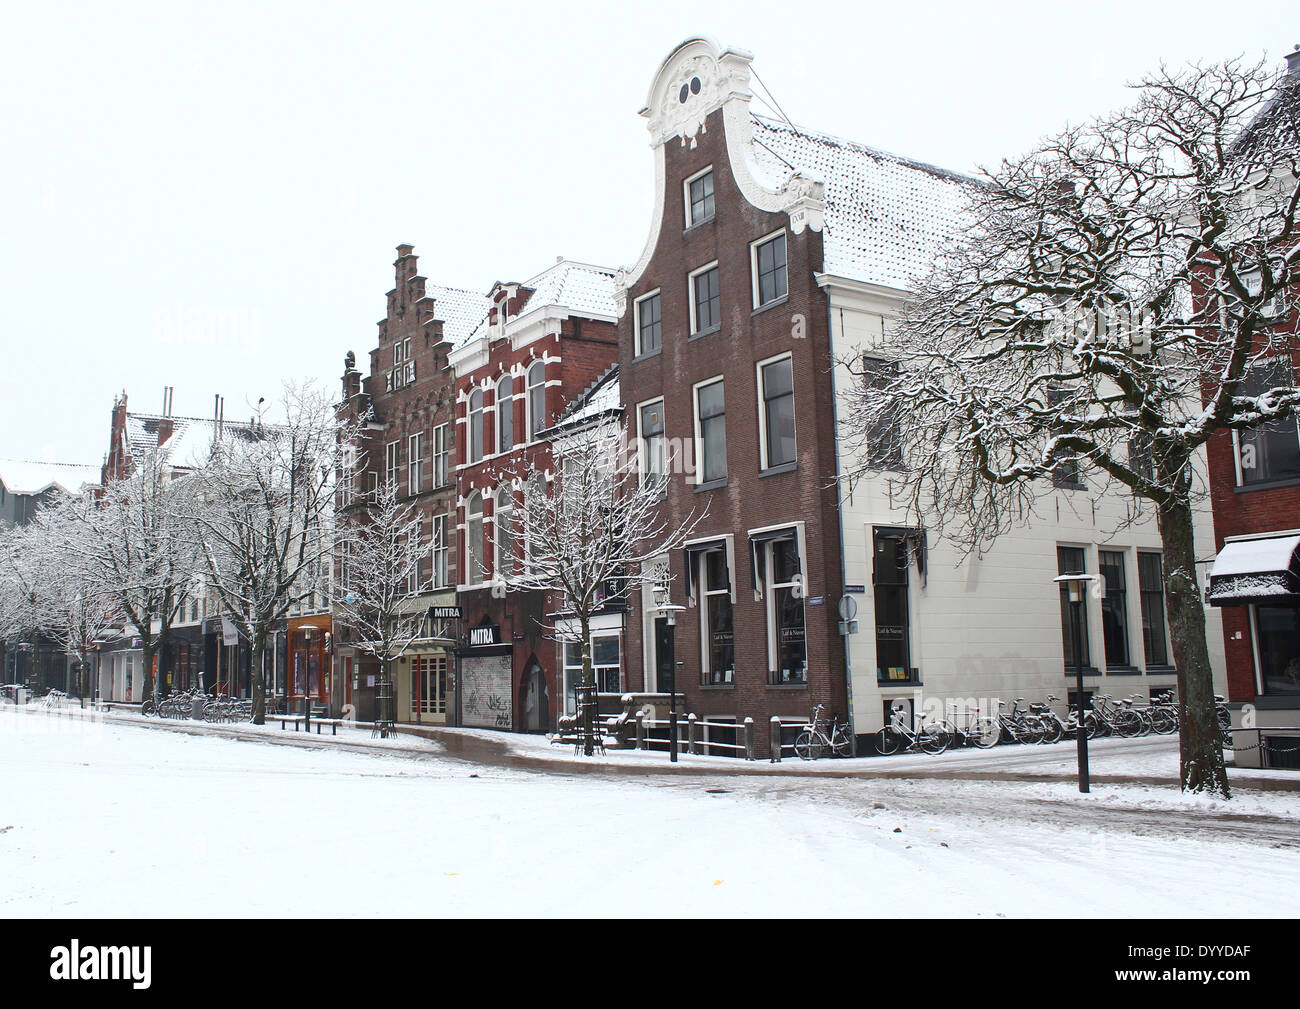 Maisons anciennes à Vismarkt (marché aux poissons) square à Groningen, aux Pays-Bas en hiver Banque D'Images